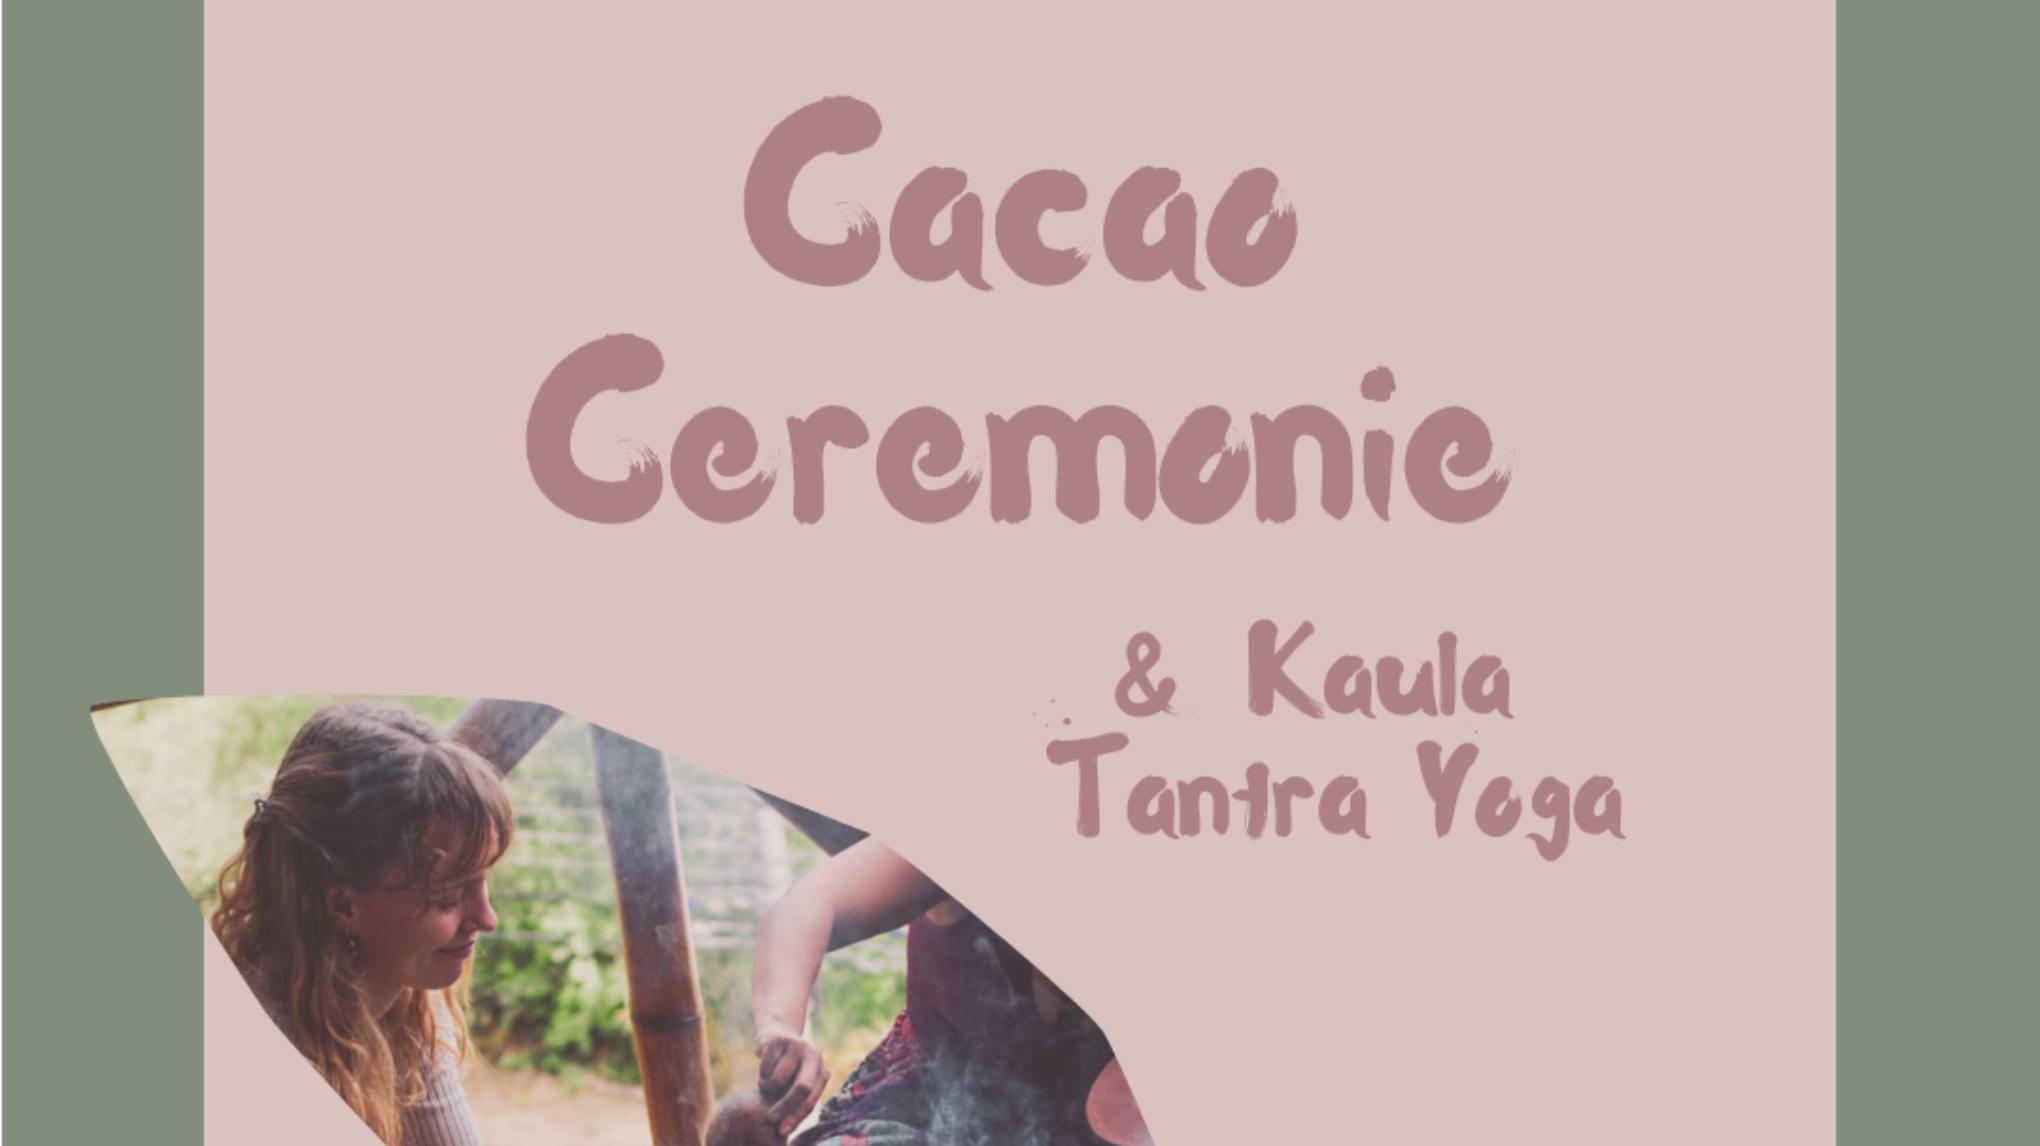 Cacao Ceremonie & Kaula Tantra Yoga